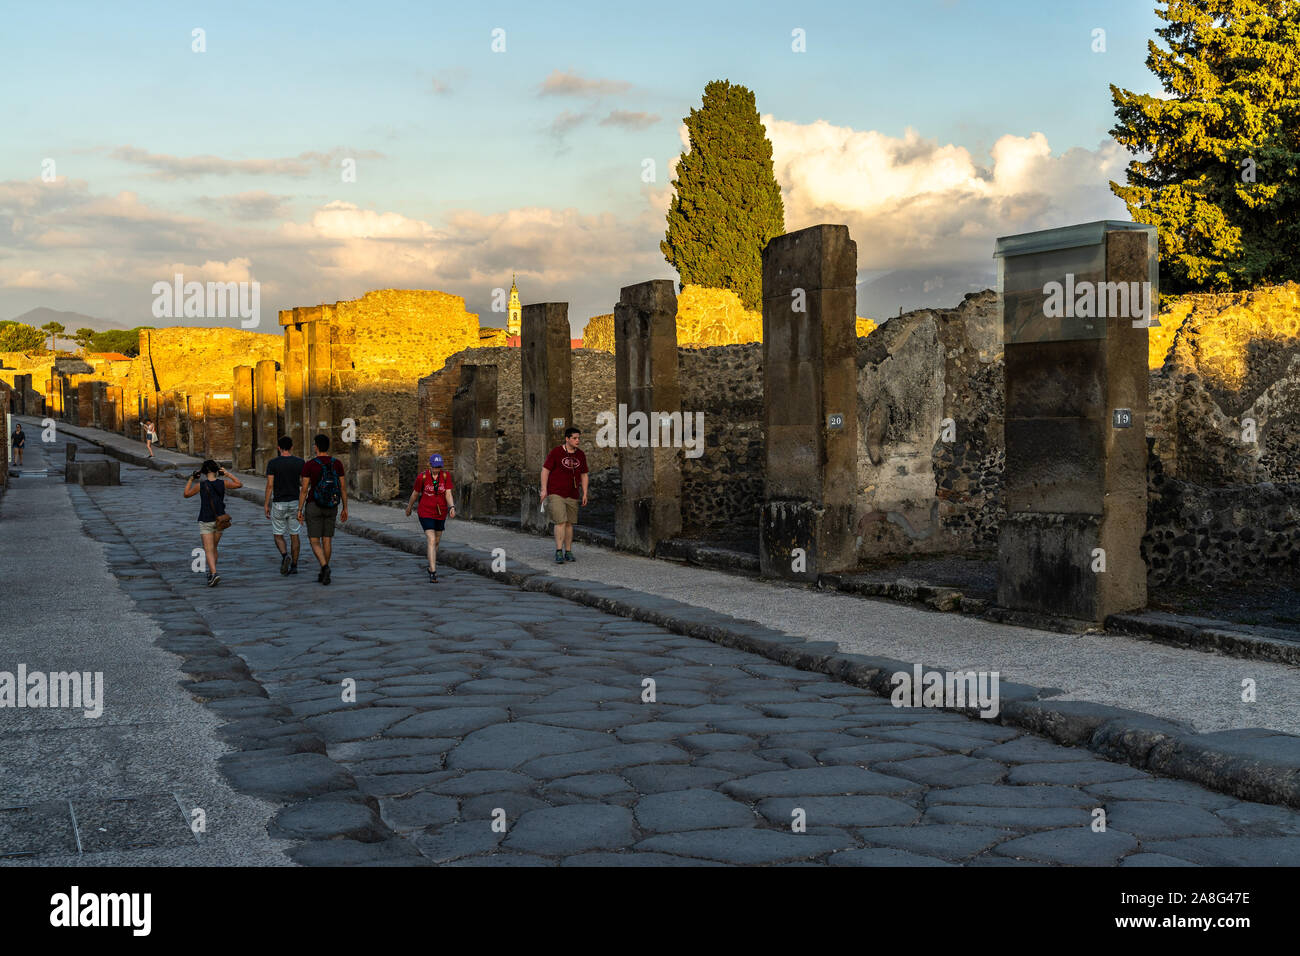 Les visiteurs parmi les ruines de Pompéi marcher sur la Via dell'abbondanza au coucher du soleil. Pompéi, Italie, Octobre 2019 Banque D'Images